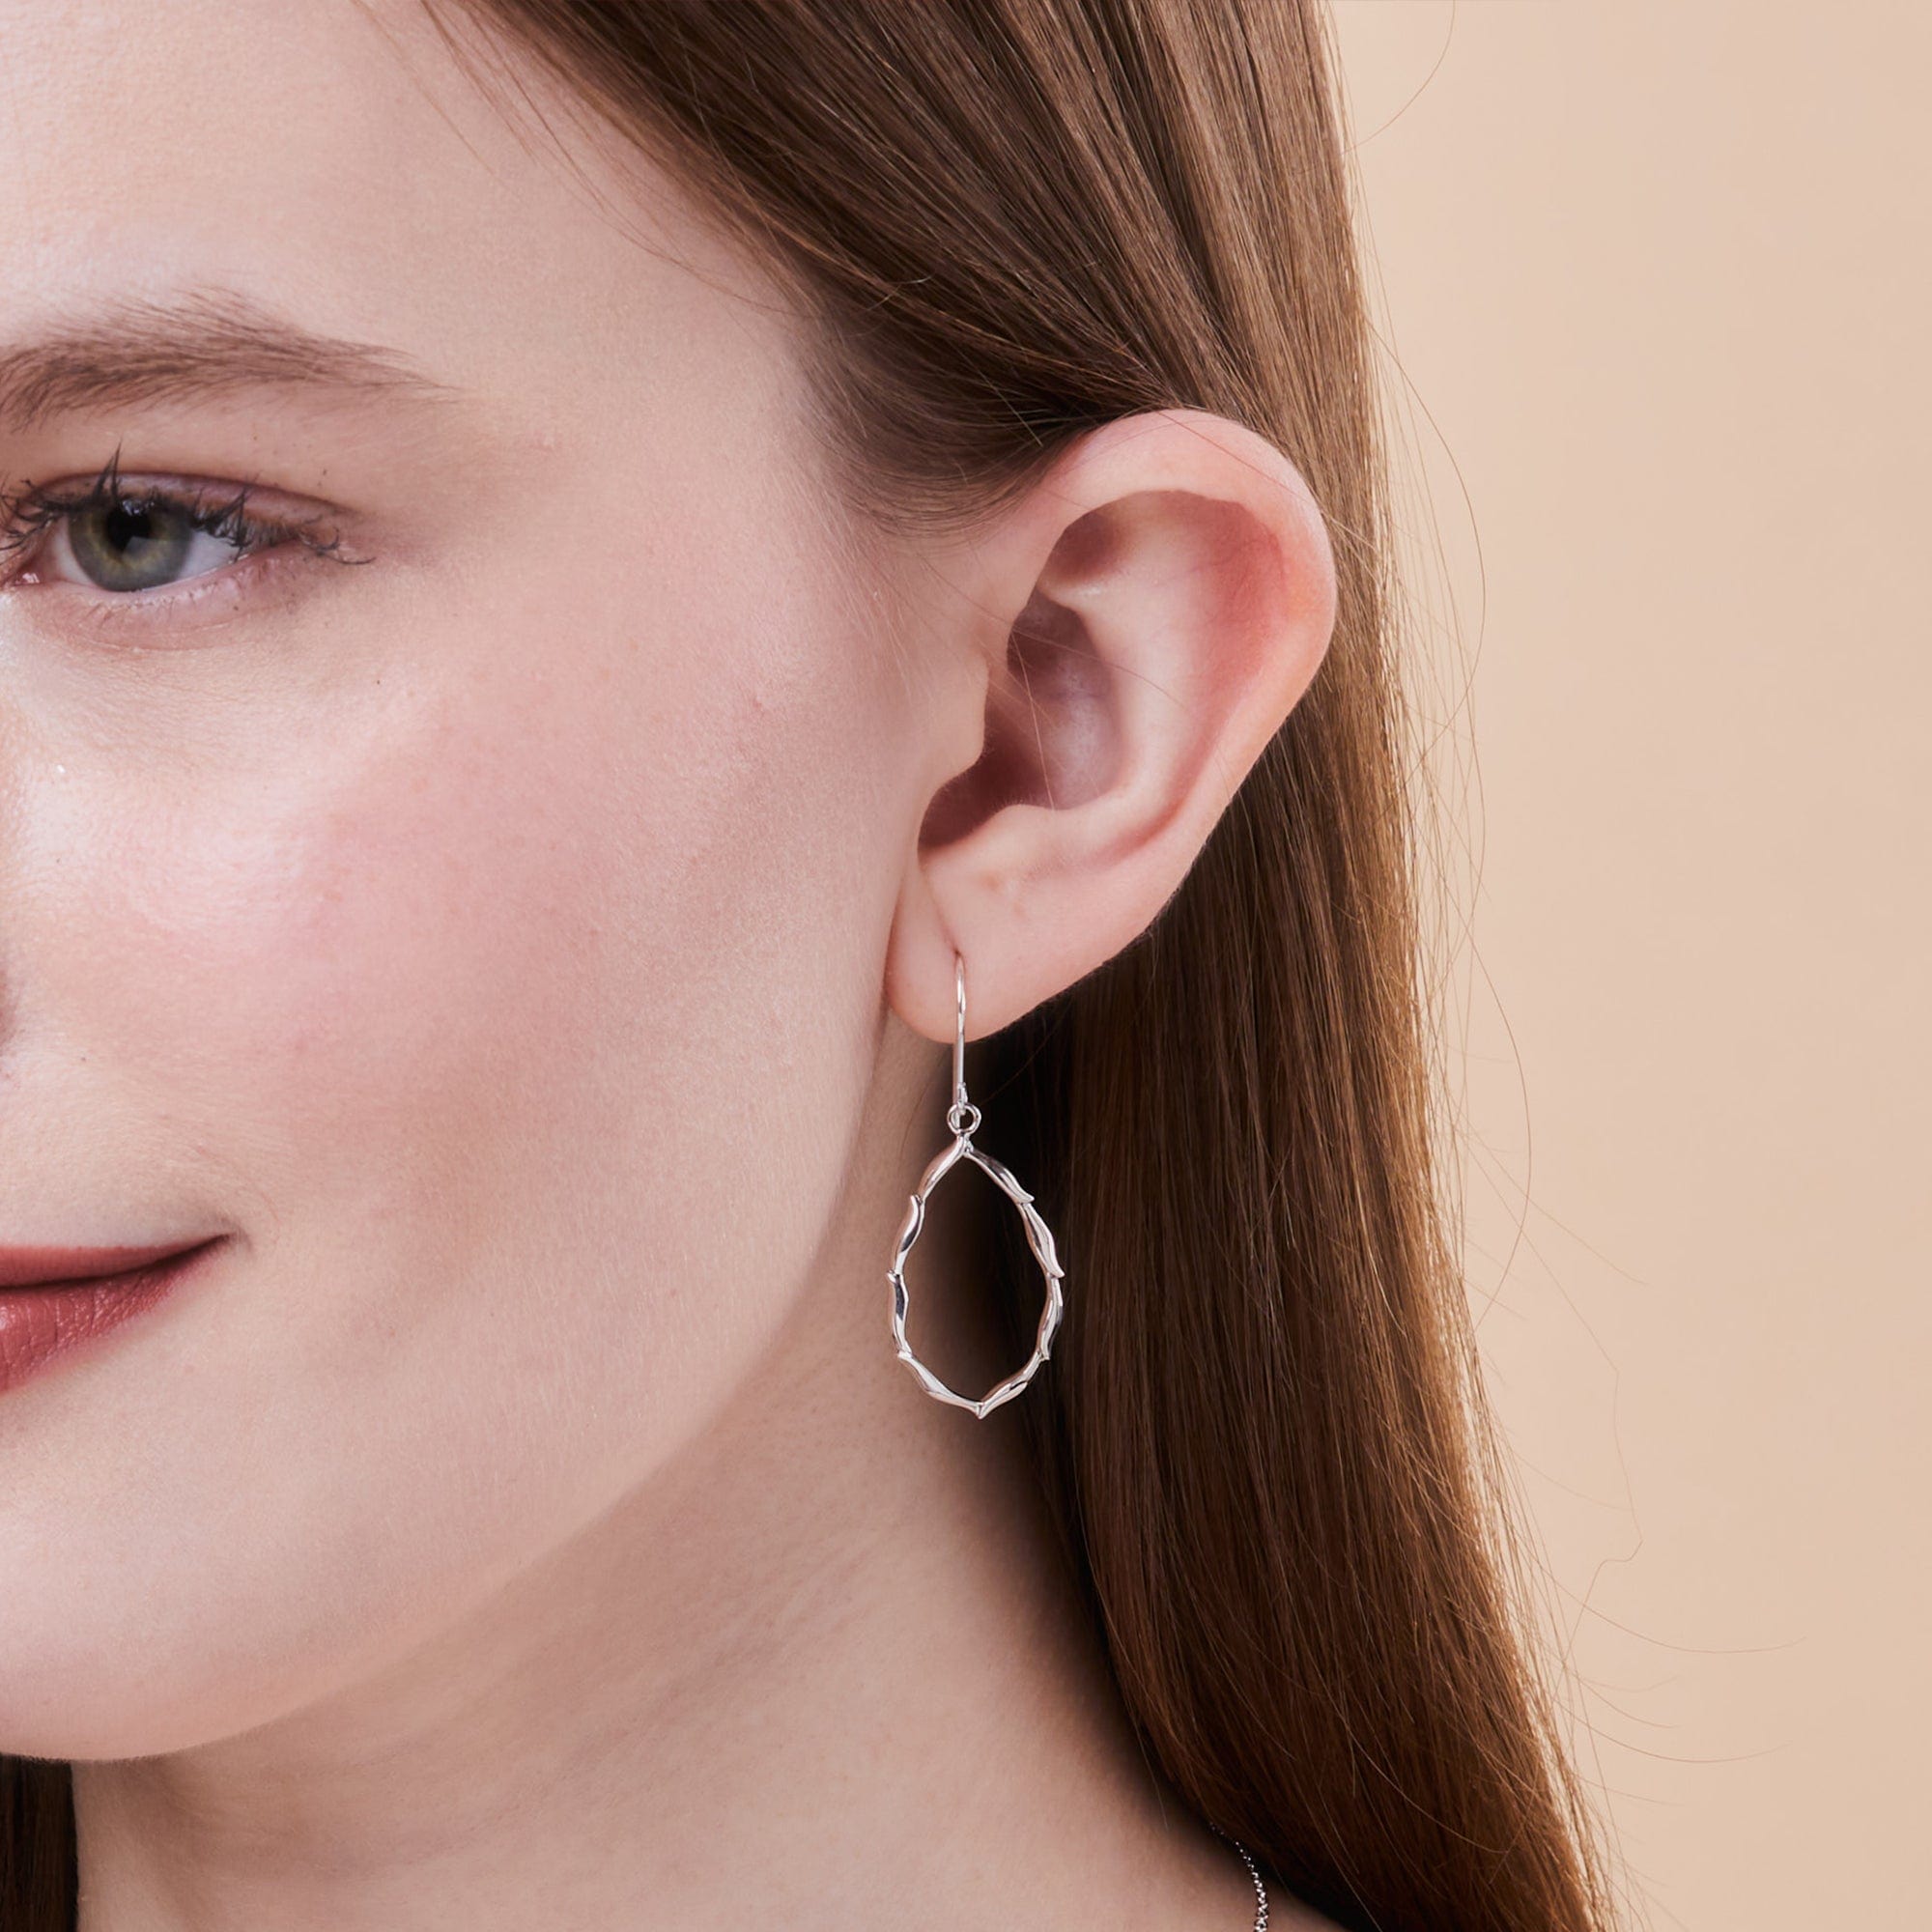 Boma Jewelry Earrings Leaves Petal Earrings